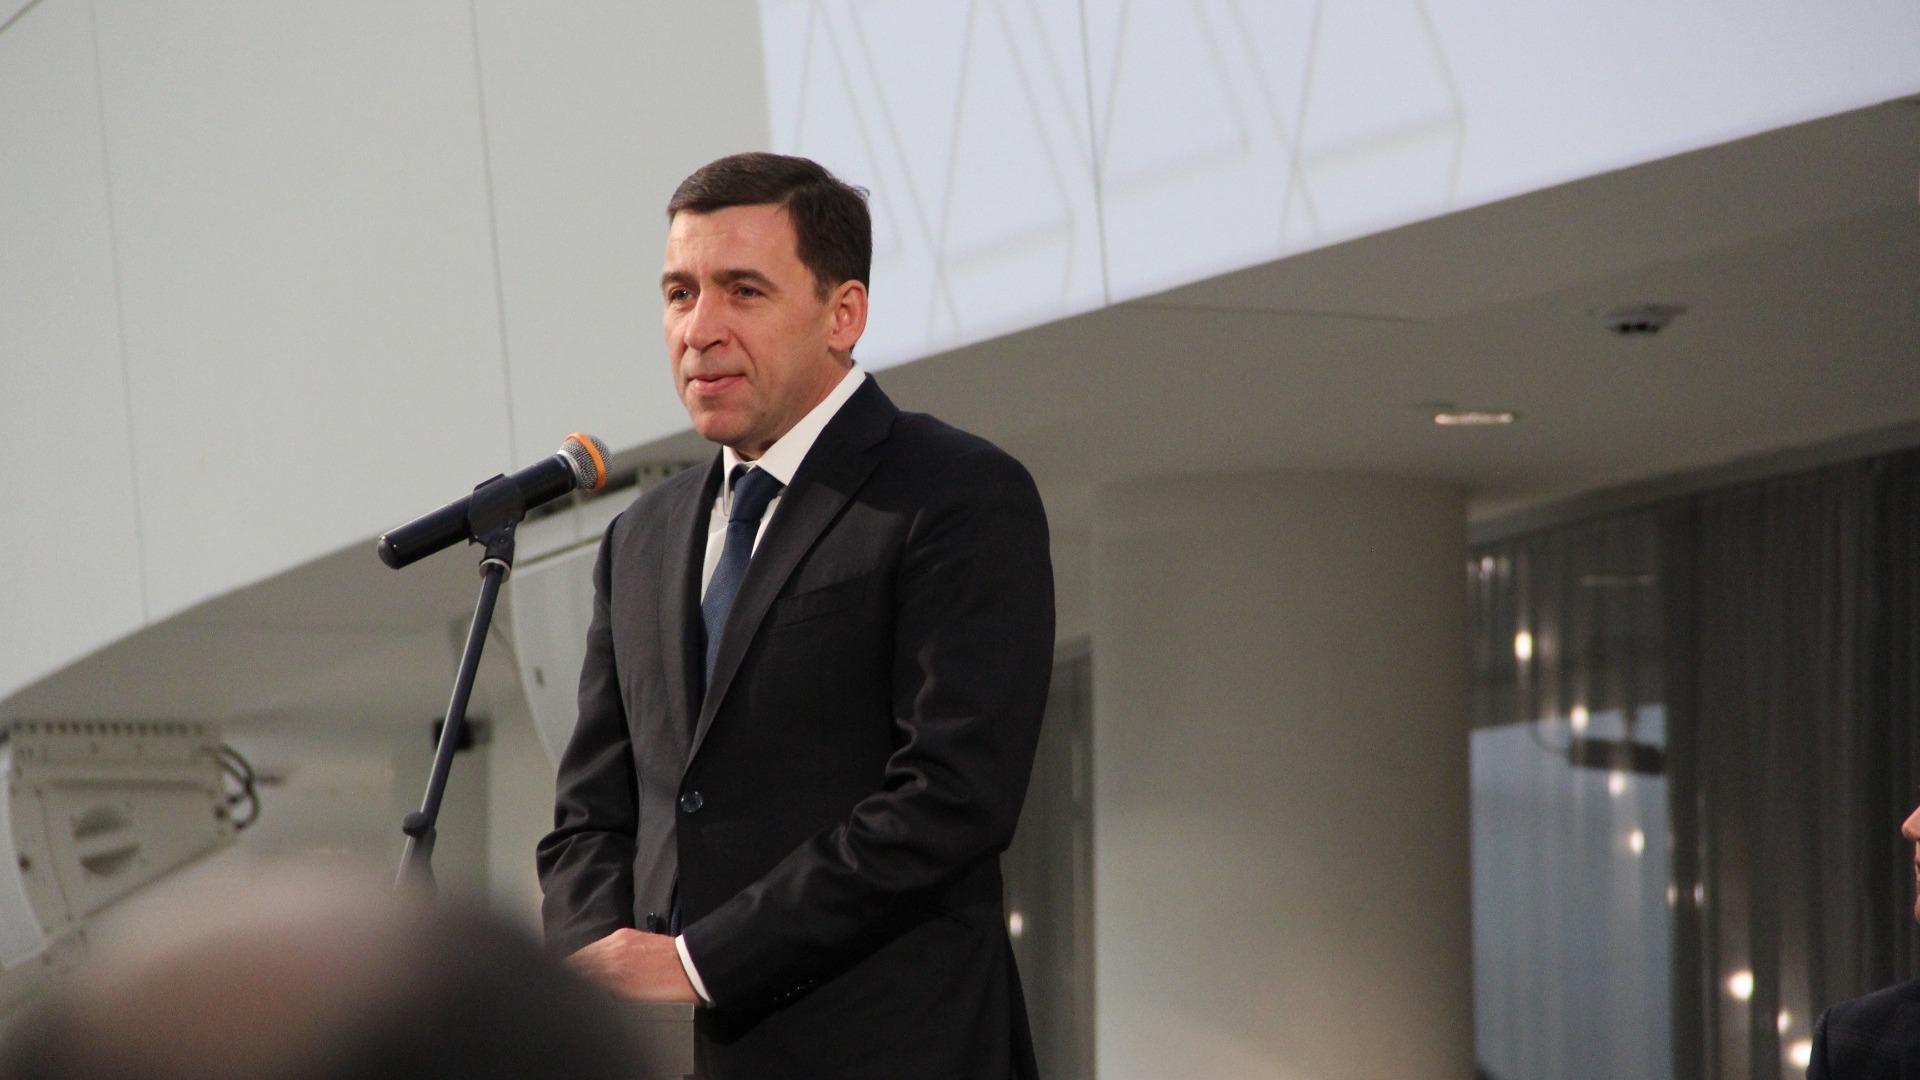 Евгений Куйвашев выдвинулся на выборы губернатора Свердловской области